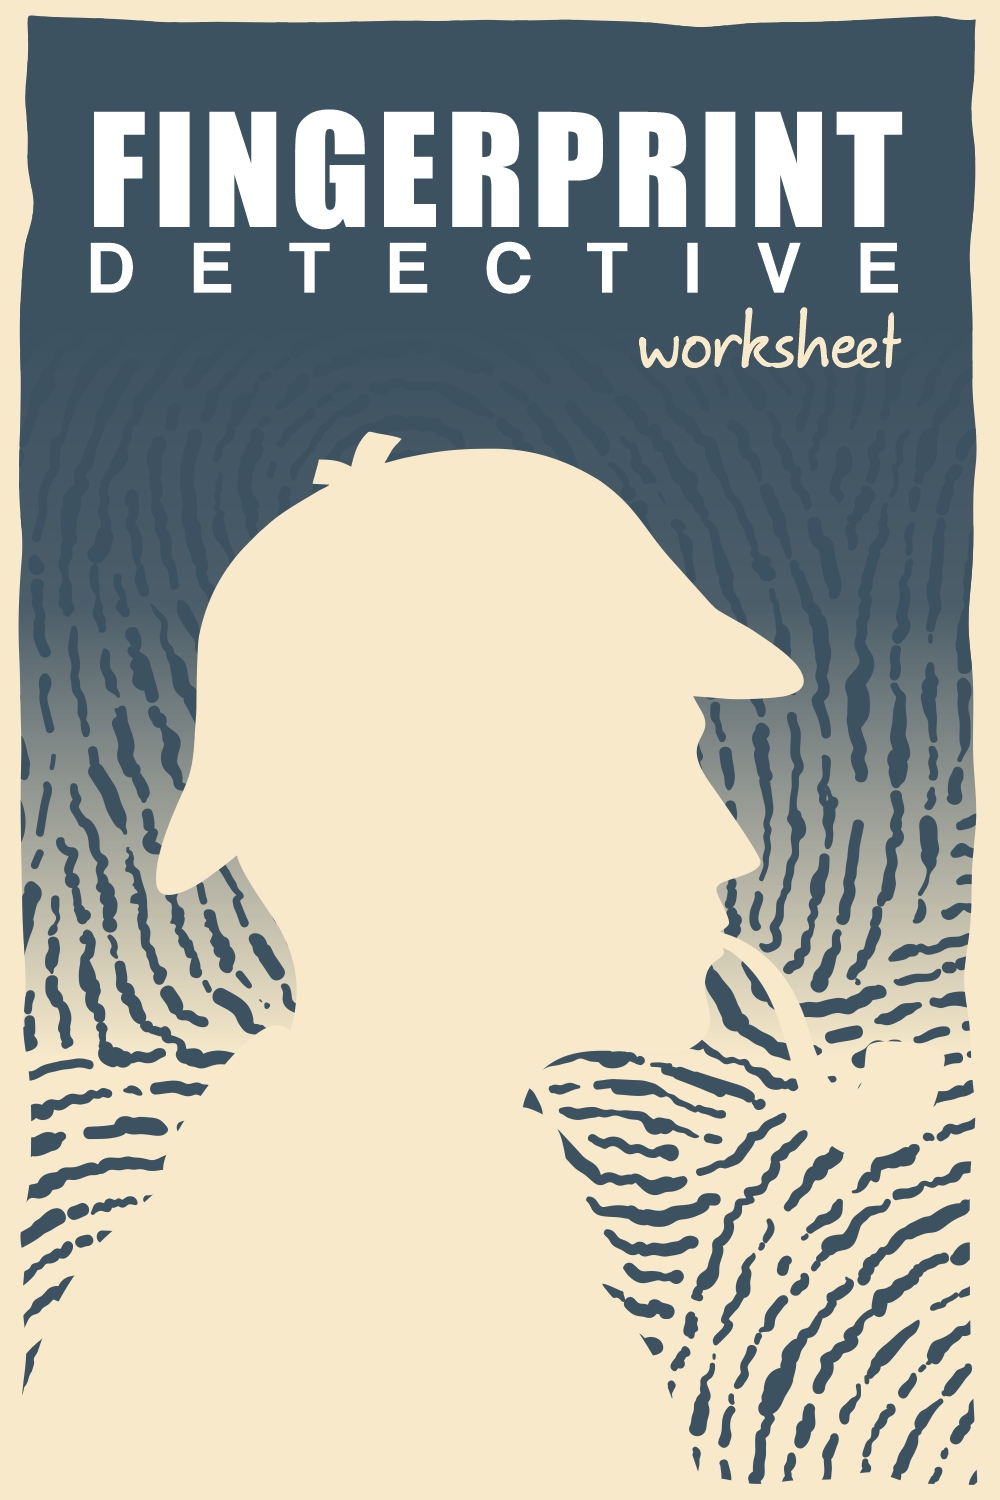 14 Images of Fingerprint Detective Worksheet